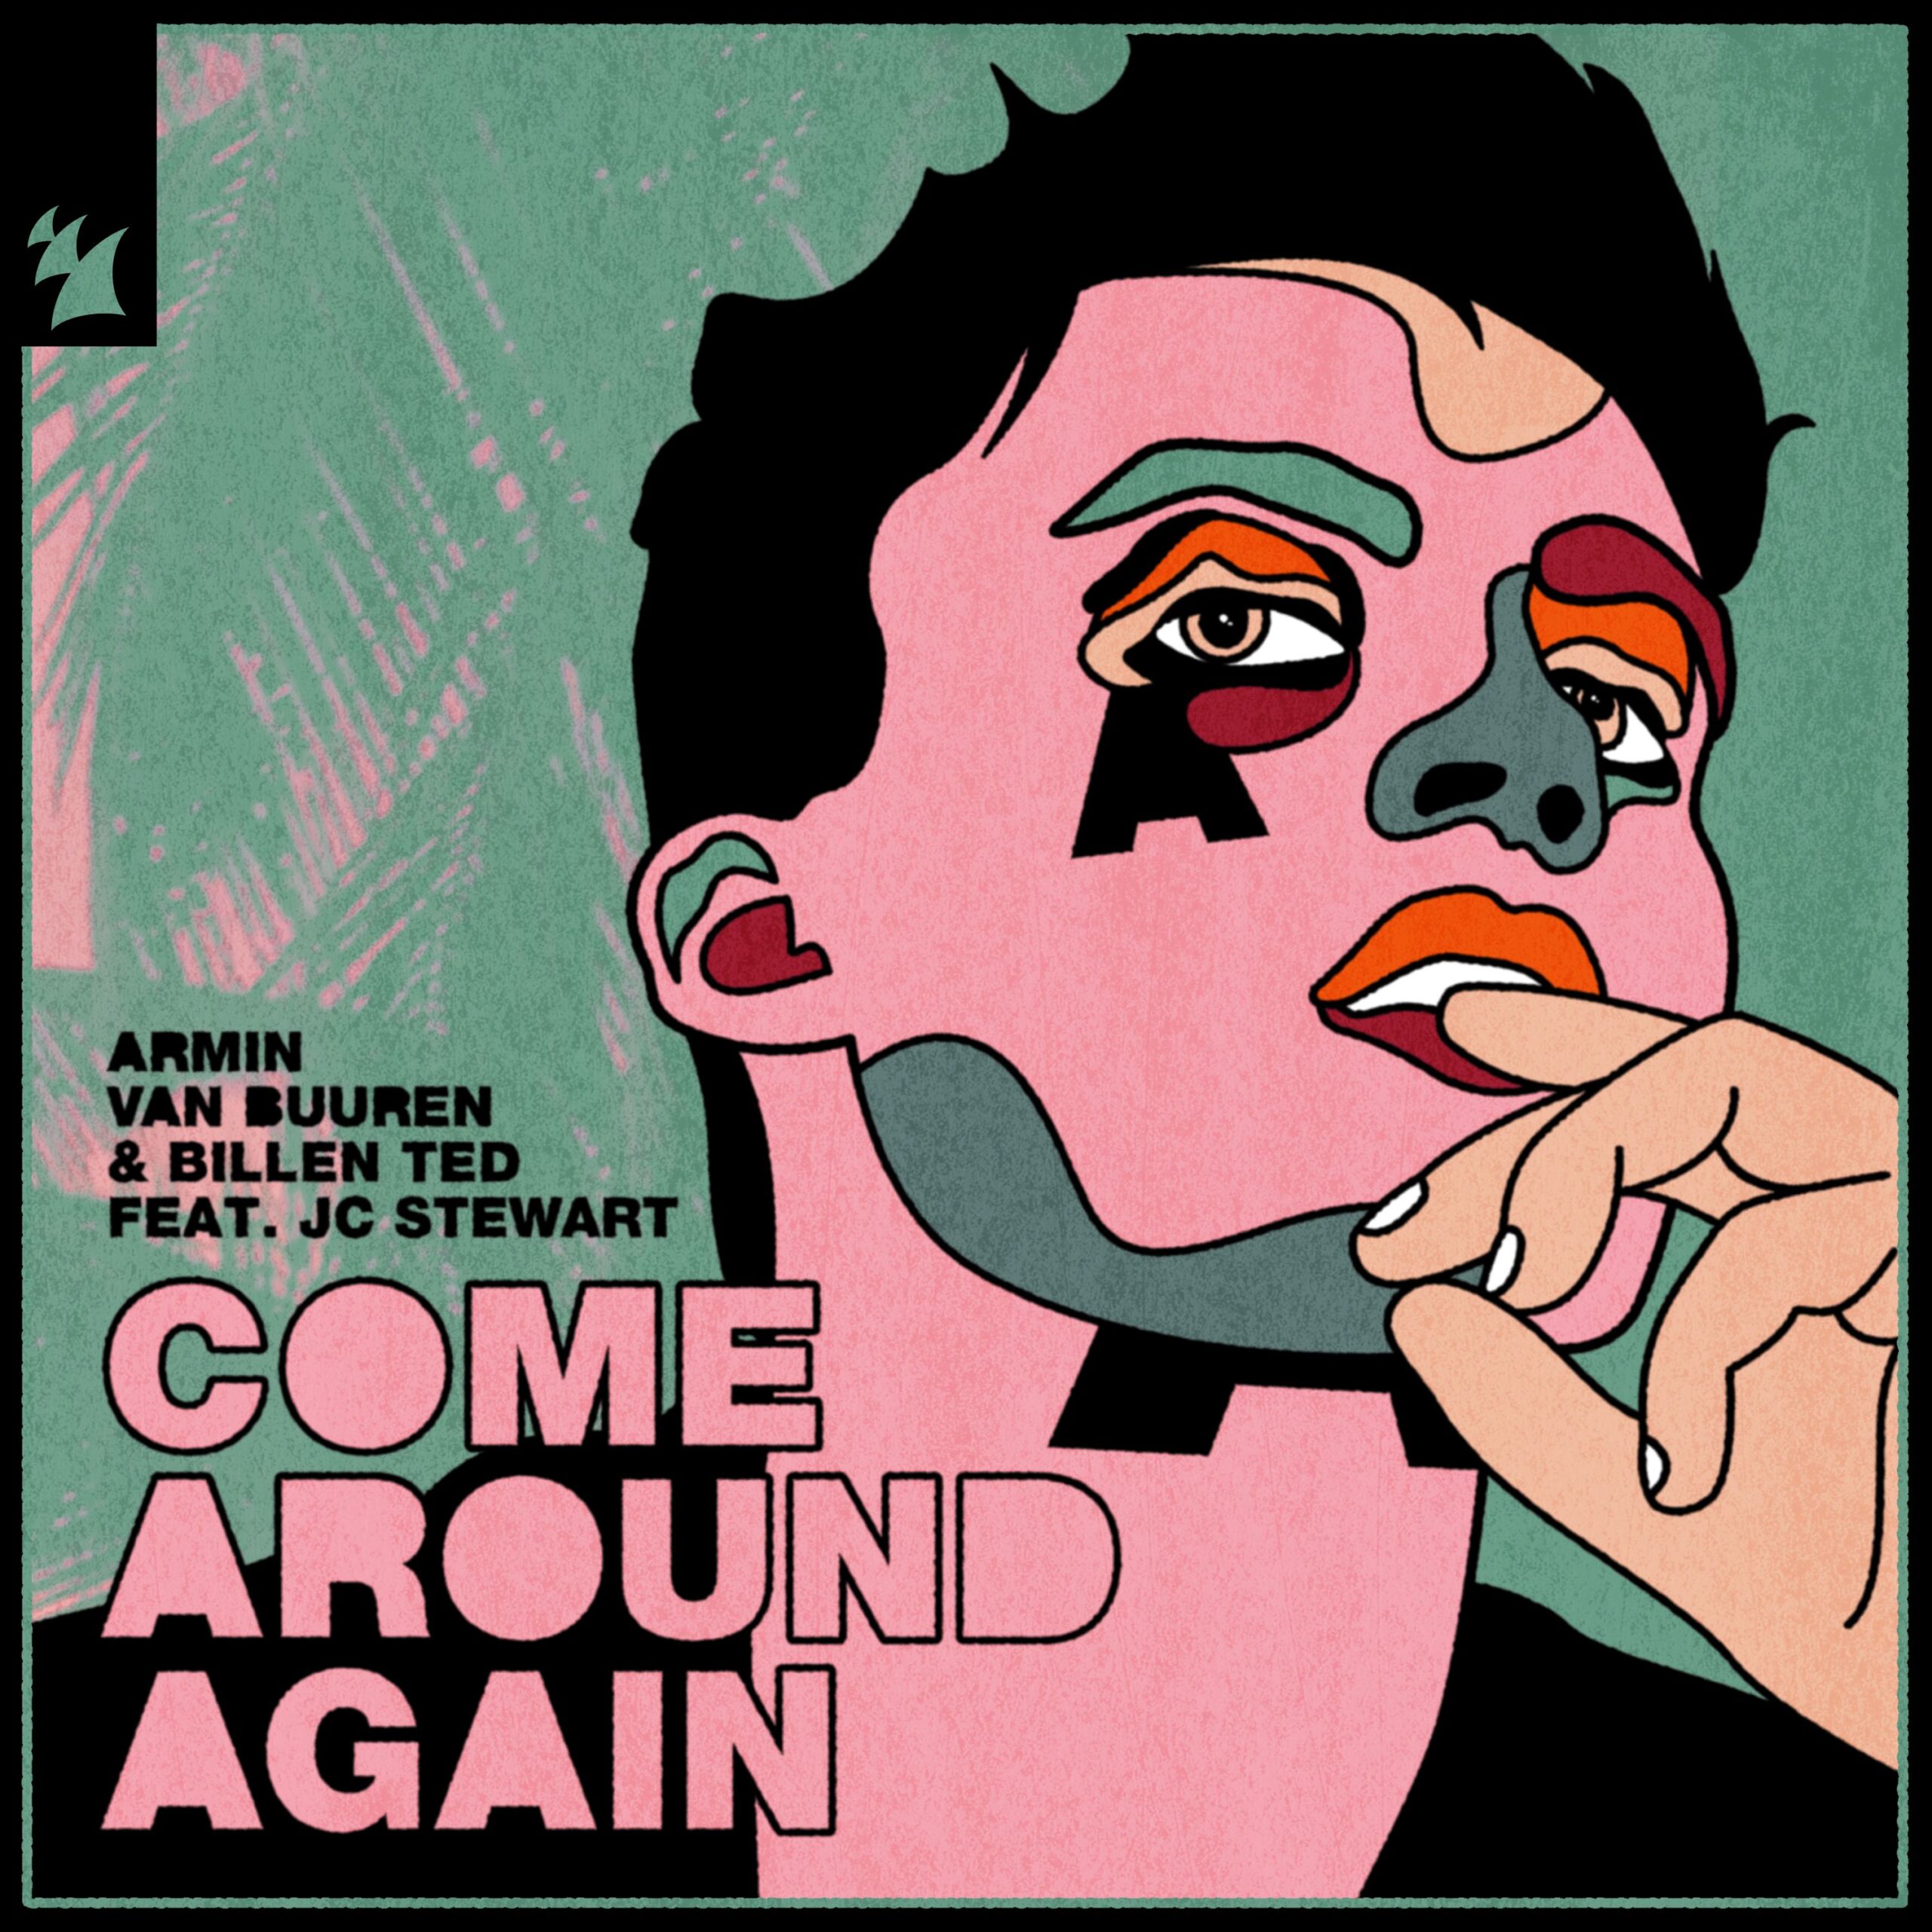 Armin van Buuren and Billen Ted feat. JC Stewart presents Come Around Again on Armada Music